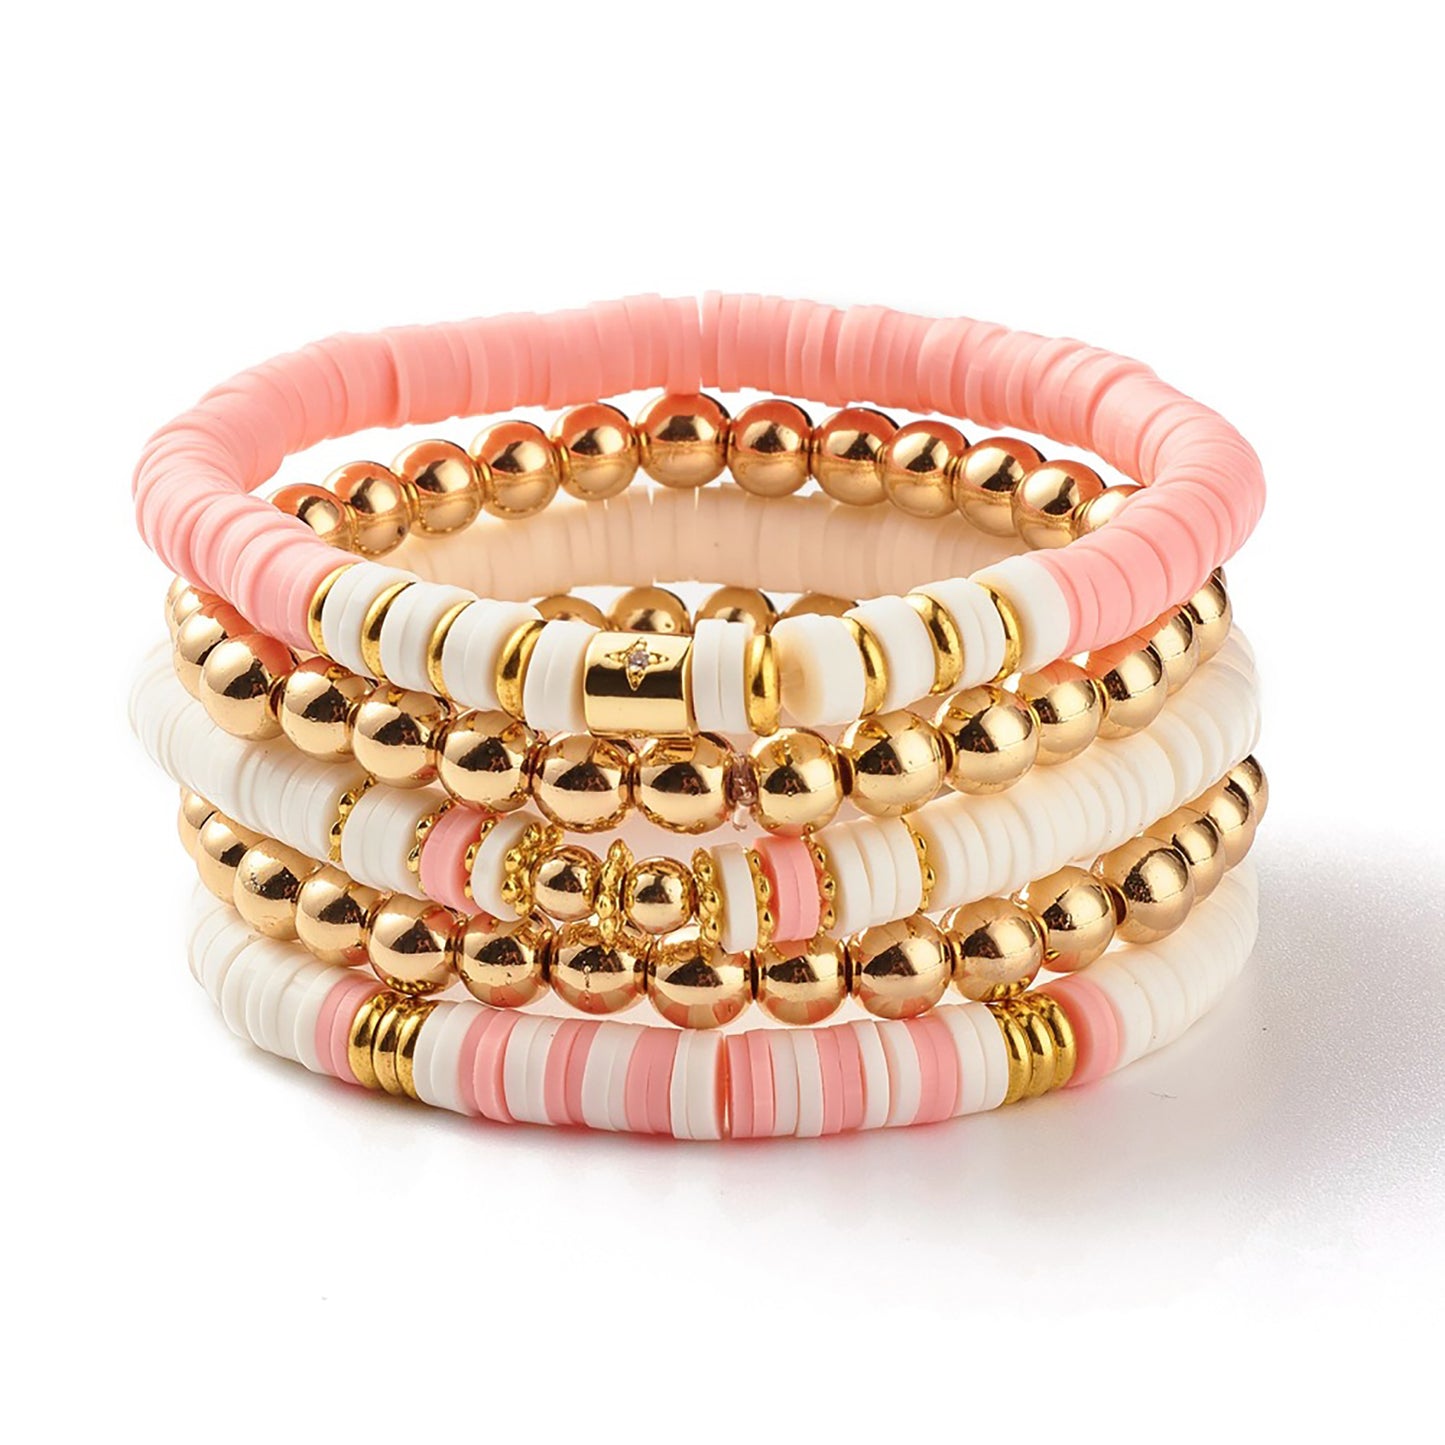 Pulseiras elásticas com miçangas brancas e rosa para mulheres - pilha de 5 pulseiras 